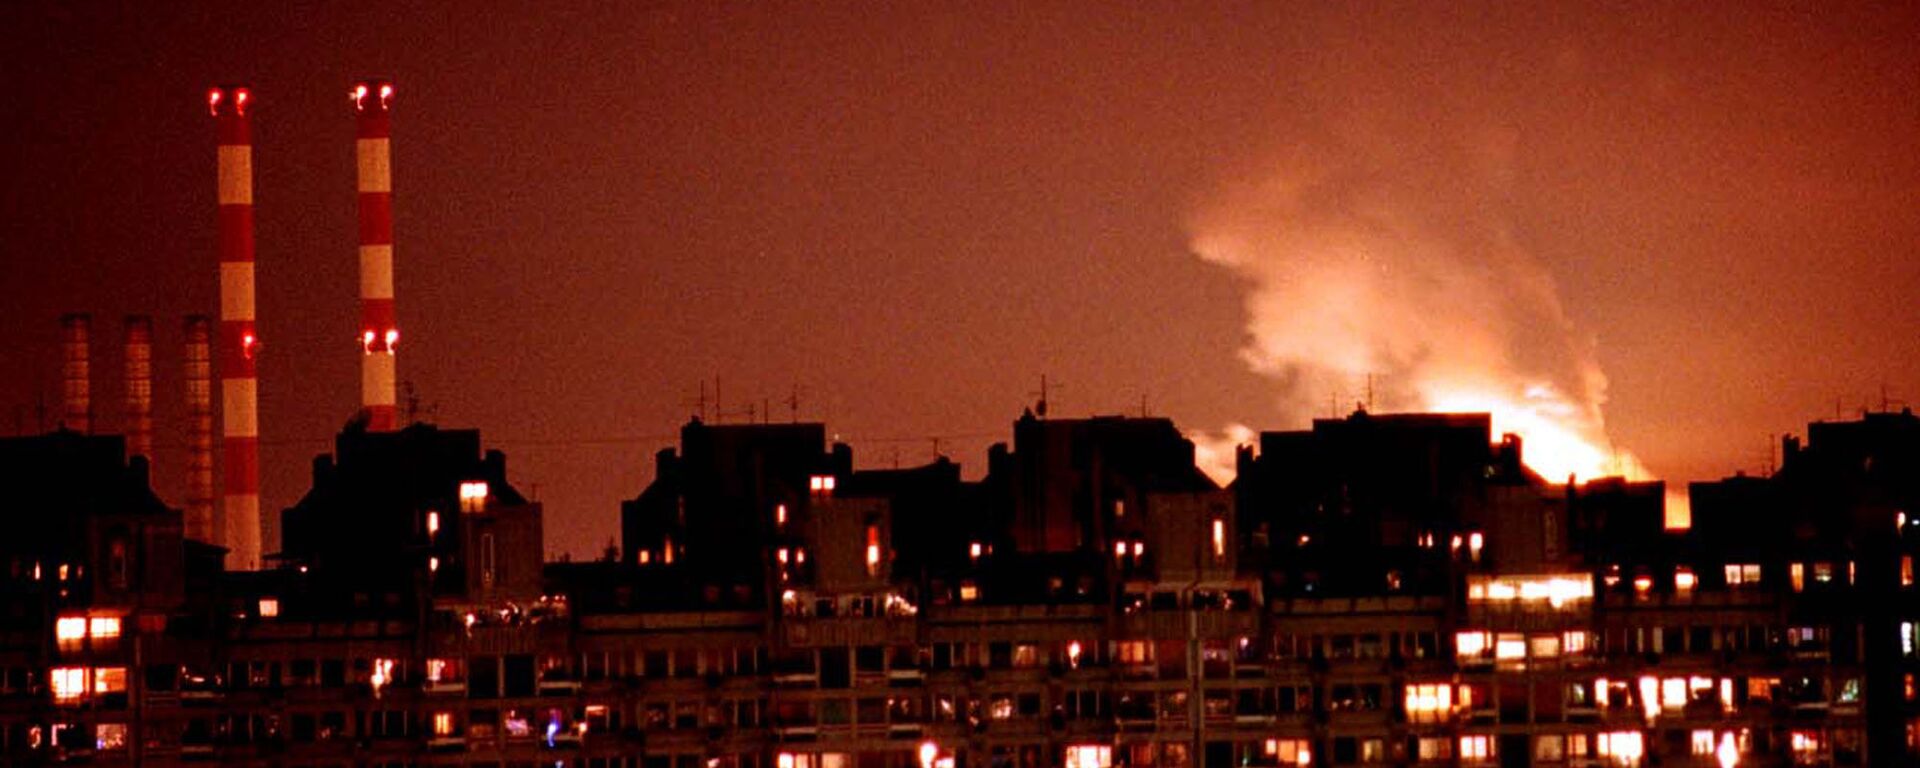 Bombardeos de Yugoslavia por la OTAN en 1999 - Sputnik Mundo, 1920, 31.10.2019